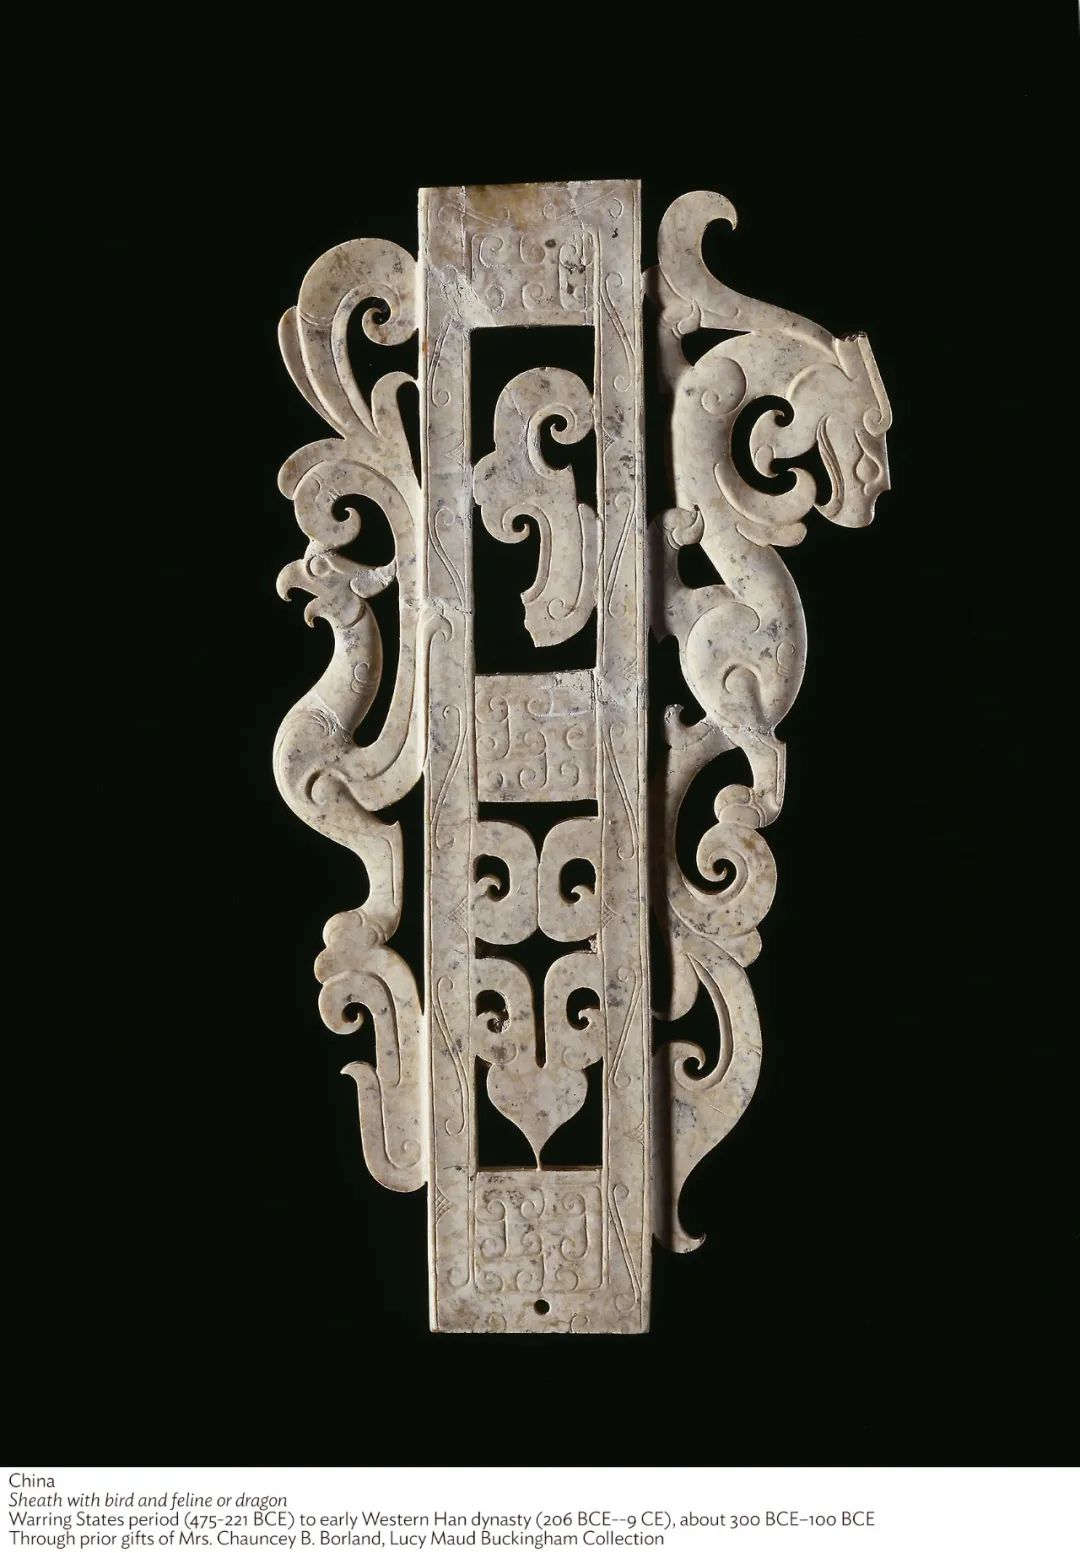 玉刀鞘， 战国晚期至西汉早期，大约公元前300年 - 100年，芝加哥艺术博物馆